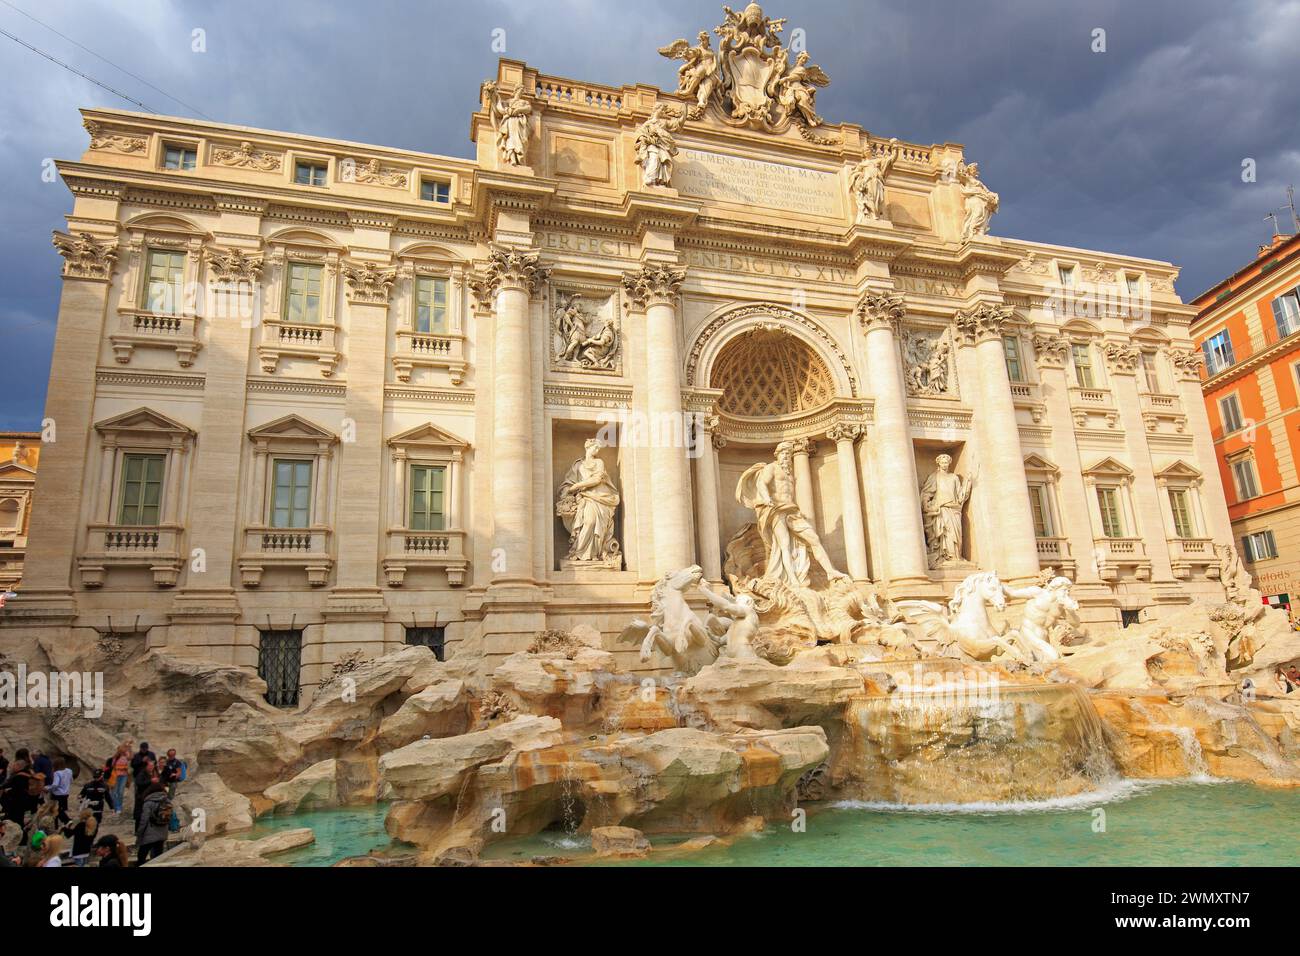 Fontana di Trevi, Roma, 22-02-24. Fontana ornata progettata dall'architetto italiano Nicola salvi e completata da Giuseppe Pannini nel 1762, si tratta di un Foto Stock